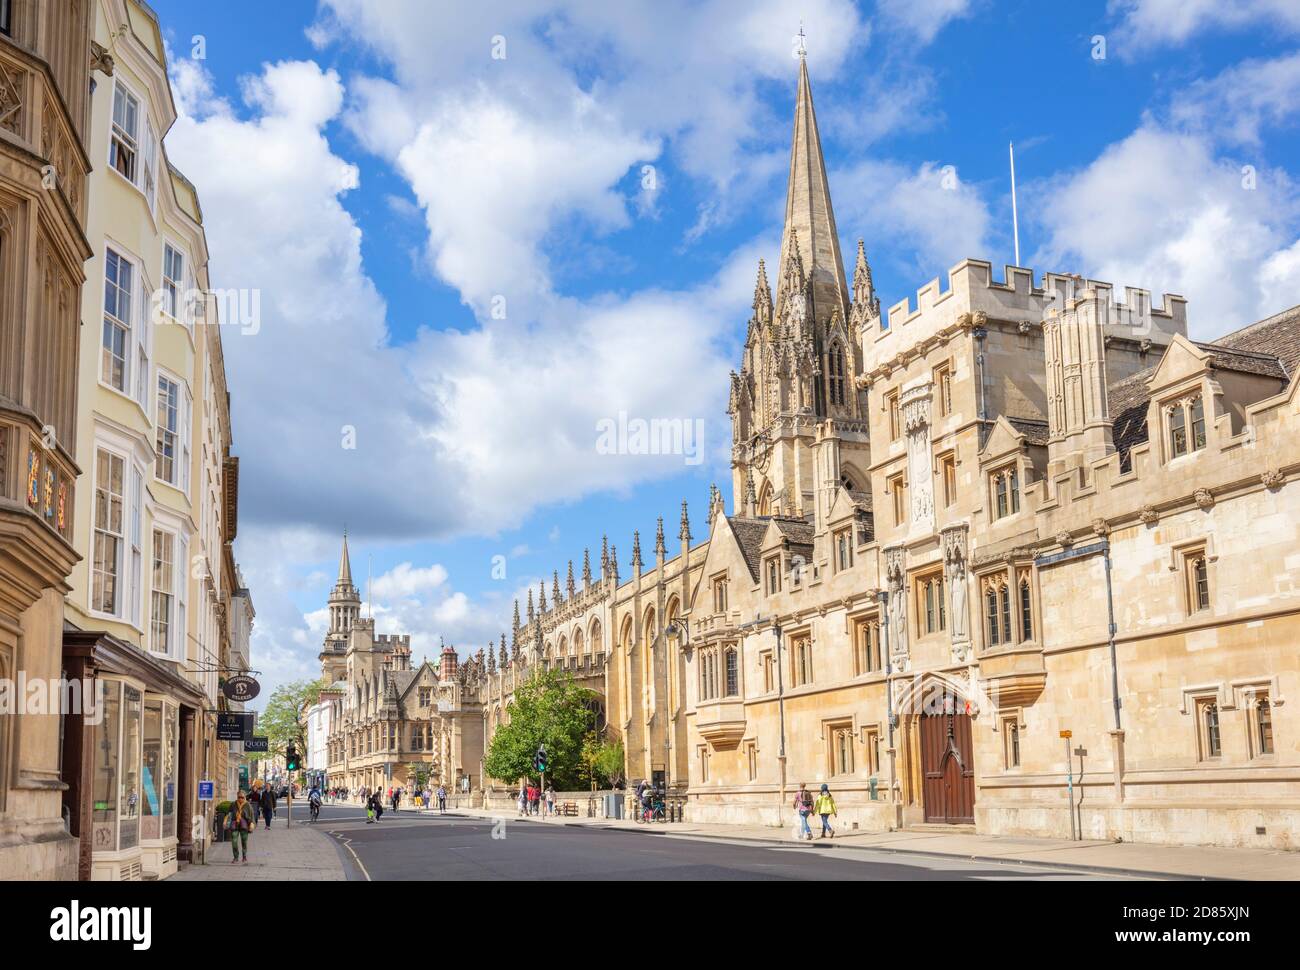 Entrée à l'université d'Oxford à l'Old Souls College Oxford et tour de l'église universitaire de St Mary The Virgin Oxford Oxfordshire England GB Banque D'Images